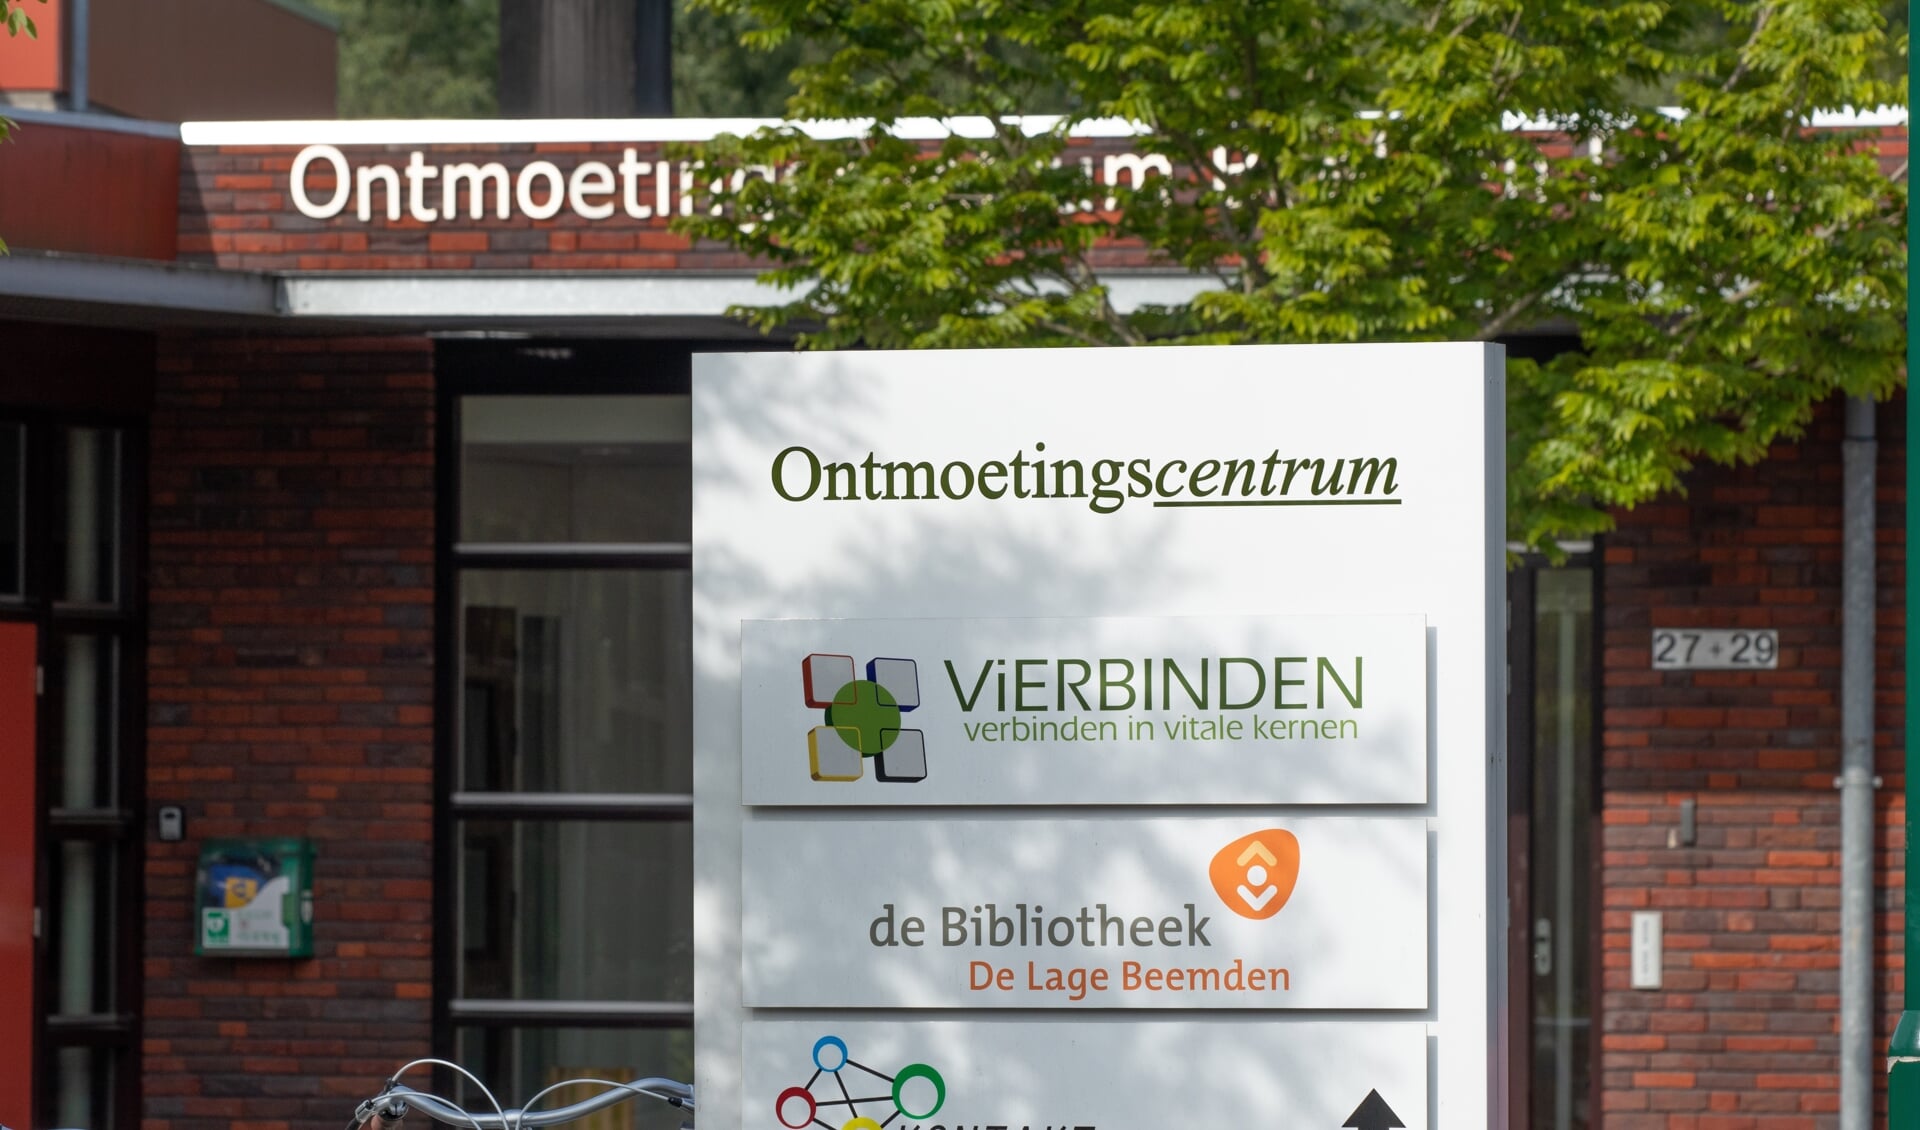 De stichting ViERBINDEN is gevestigd in het Ontmoetingscentrum in Beek en Donk